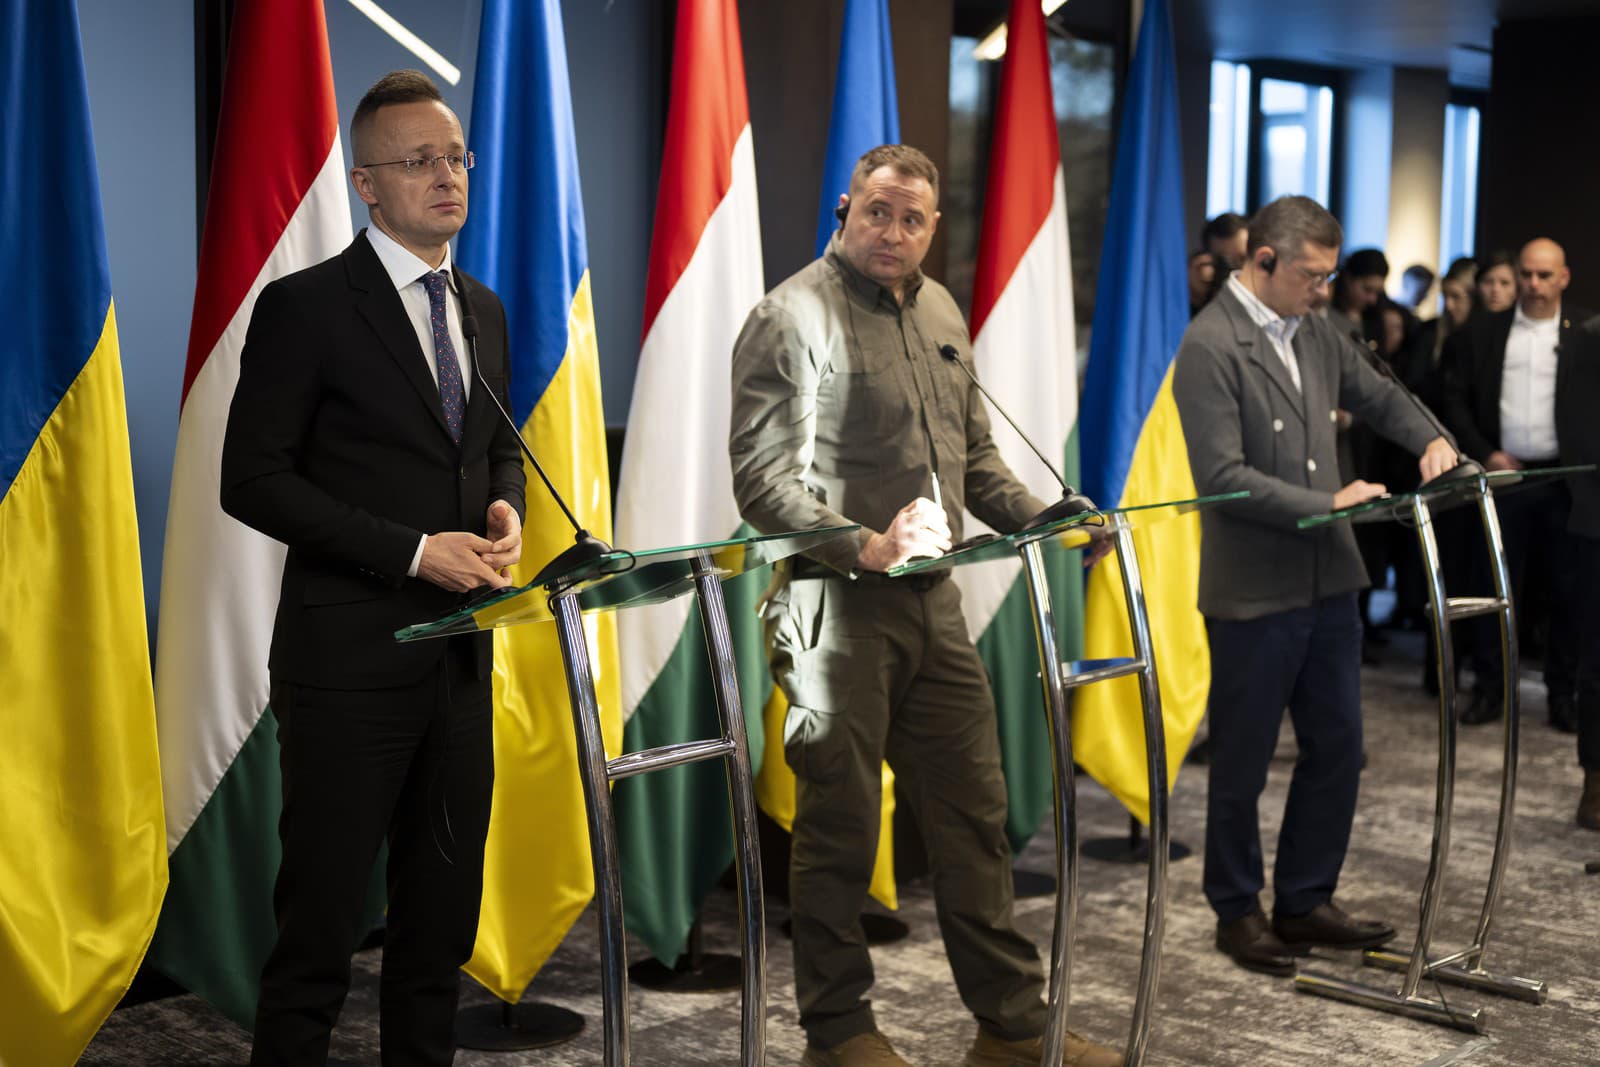 Maďarský minister zahraničných vecí Peter Szijjarto (vľavo) na tlačovej konferencii so svojím ukrajinským kolegom Dmytrom Kulebom (vpravo) a vedúcim ukrajinskej prezidentskej kancelárie Andrijom Jermakom v Kamianycii.